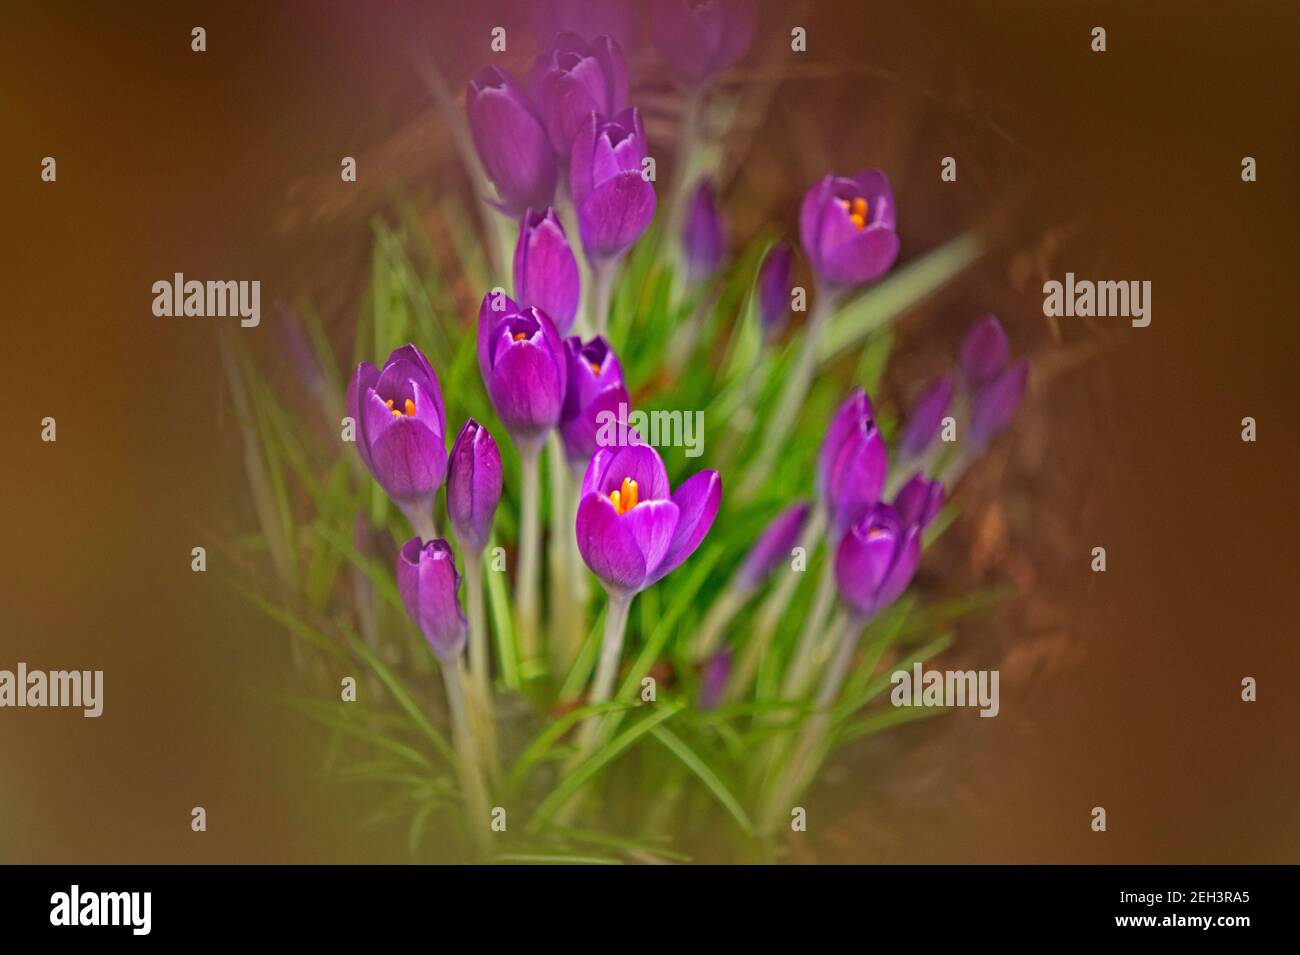 Édimbourg, Écosse, Royaume-Uni. Crocus fleurir dans le jardin domestique montrant des signes de couleur de bienvenue et que le printemps sera bientôt ici après la neige la semaine dernière et de fortes pluies de nuit et ce matin. Température de 11 degrés C. Crocus est un genre de plantes à fleurs de la famille des iris comprenant 90 espèces de plantes vivaces provenant de cormes. Classification plus élevée : Crocoideae. Famille: Iridaceae. Photo d'un groupe de fleurs photographiées avec un filtre de mise au point souple sur les bords de l'objectif de l'appareil photo. Crédit : Arch White/Alamy Live News. Banque D'Images